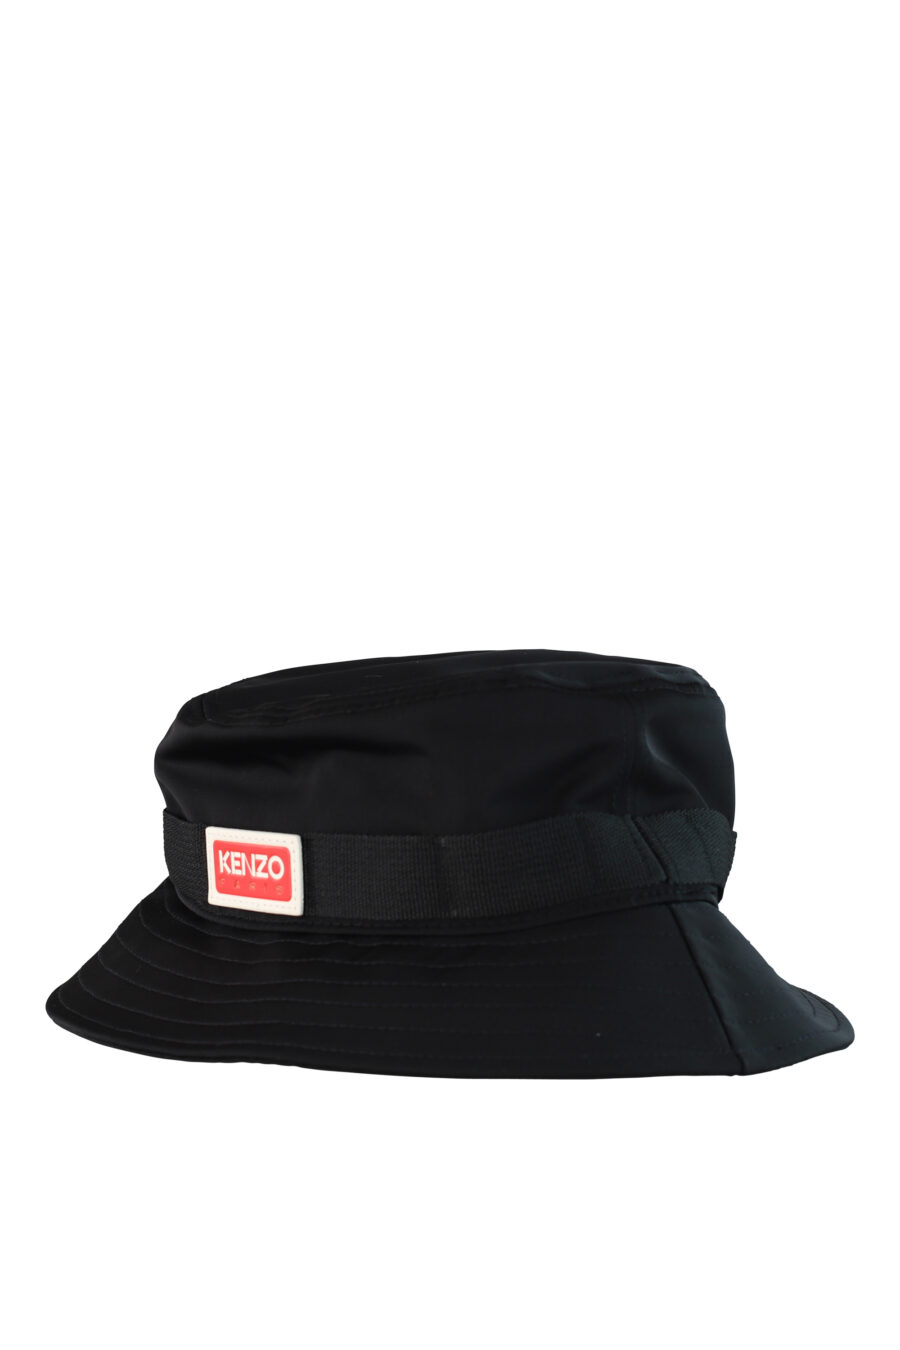 Sombrero de pescador negro con logo "paris" - IMG 0515